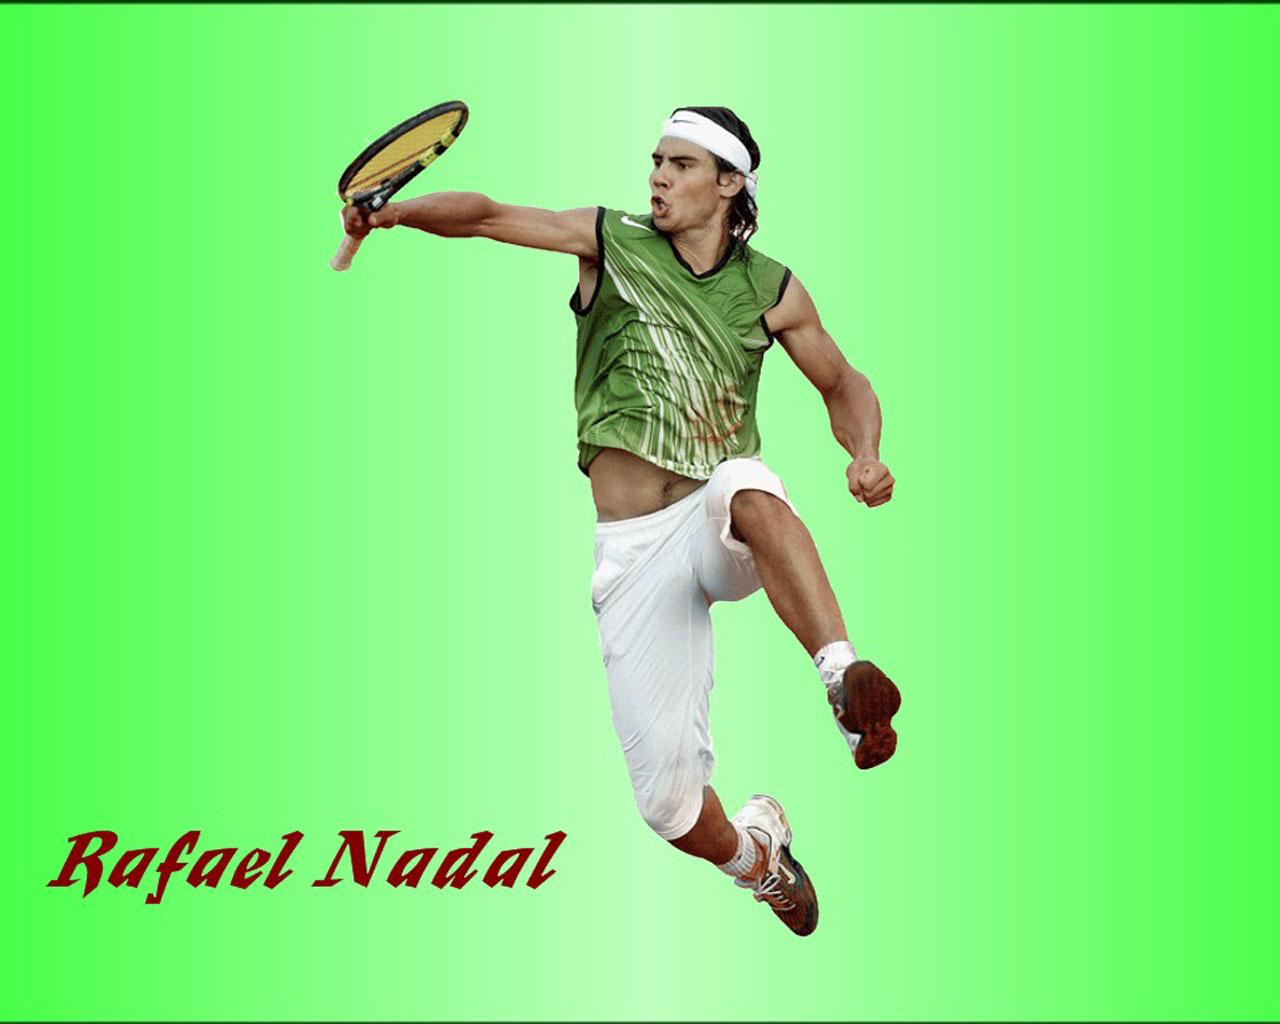 Rafael Nadal Wallpaper #3 1280 x 1024 